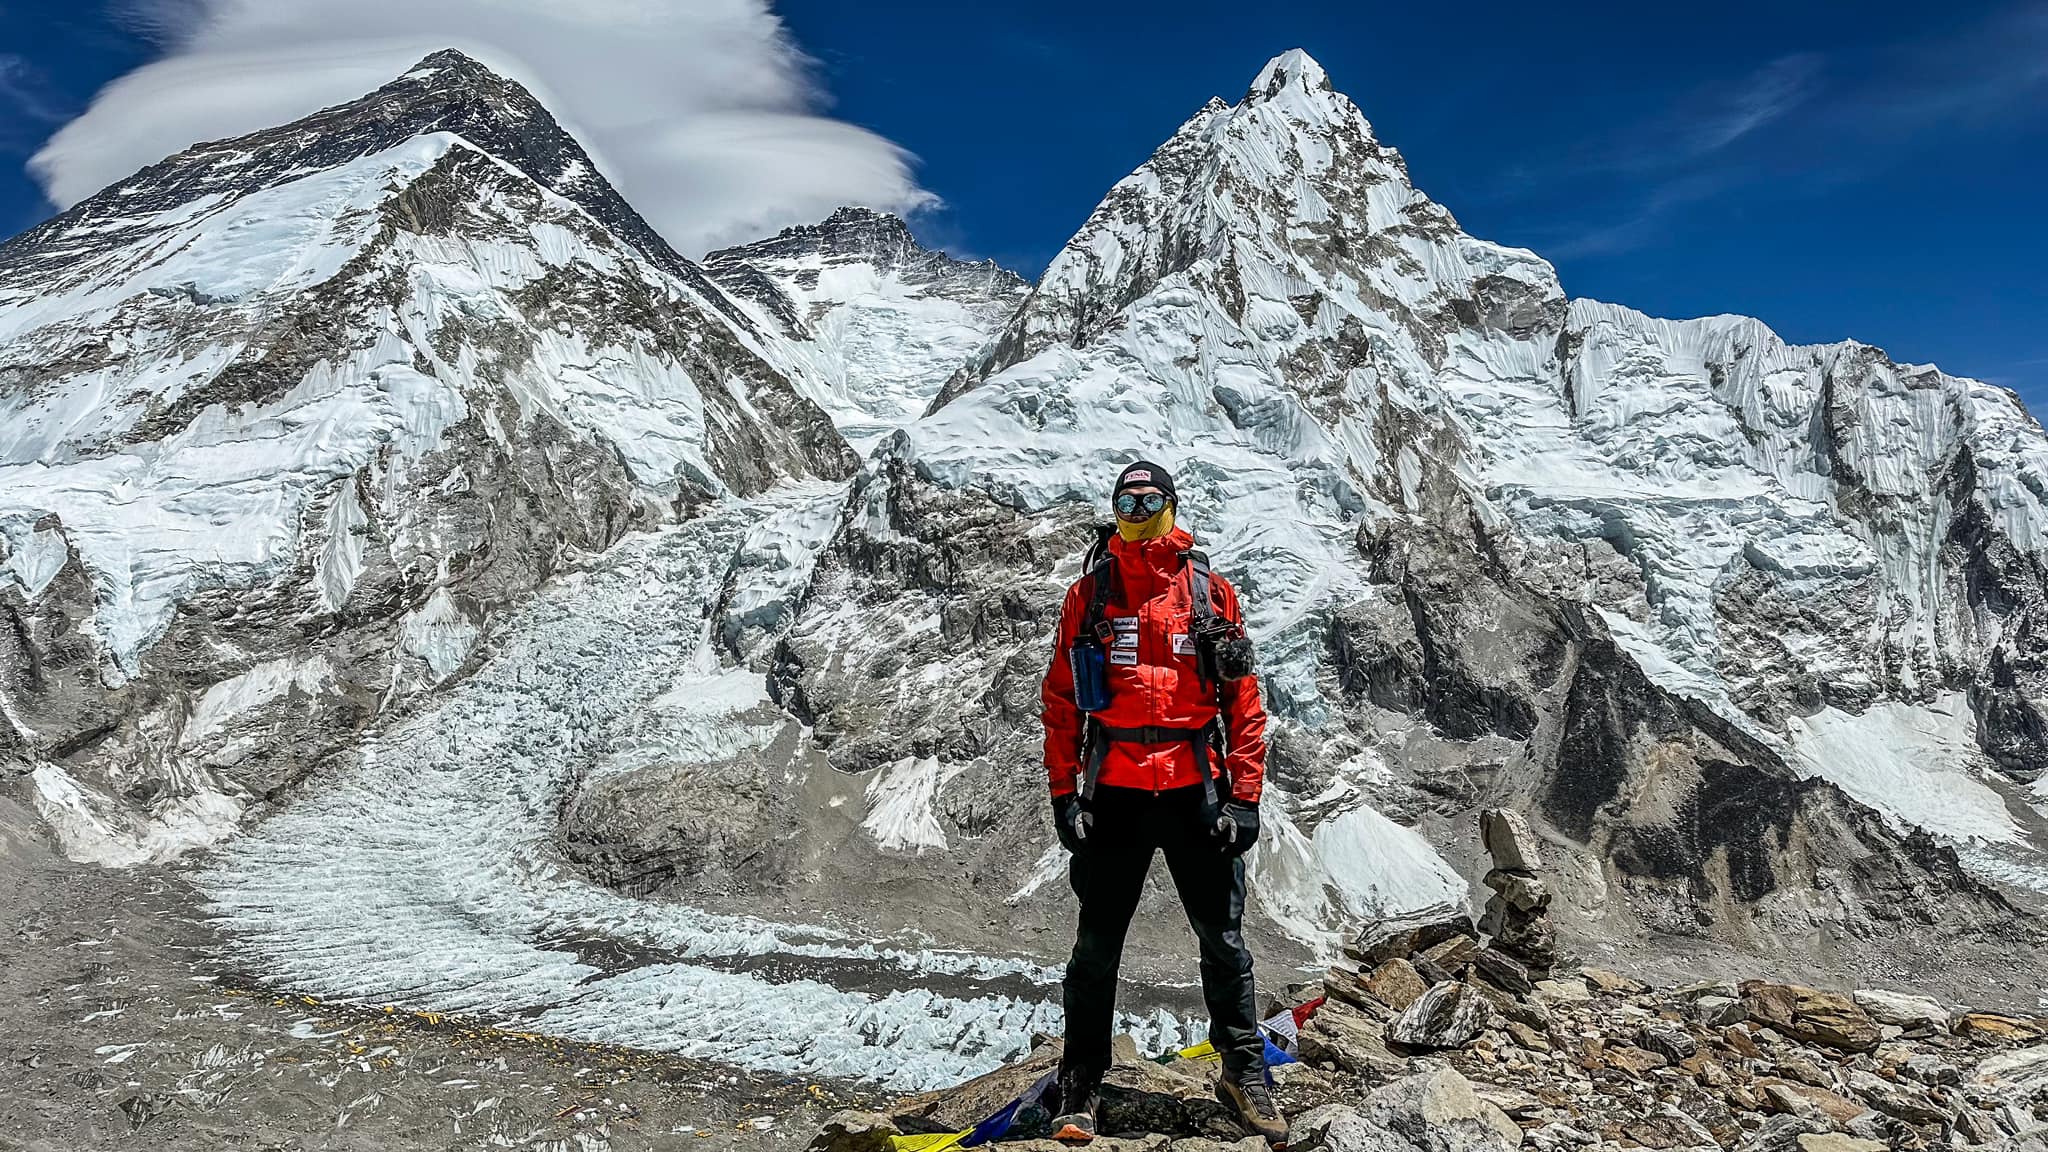 Eesti ekstreemsportlane ja mägironija Kaspar Eevald on ette võtmas 55-päevast teekonda, et jõuda maailma katusele – Everesti tippu! Kuidas on tal seni läinud? T